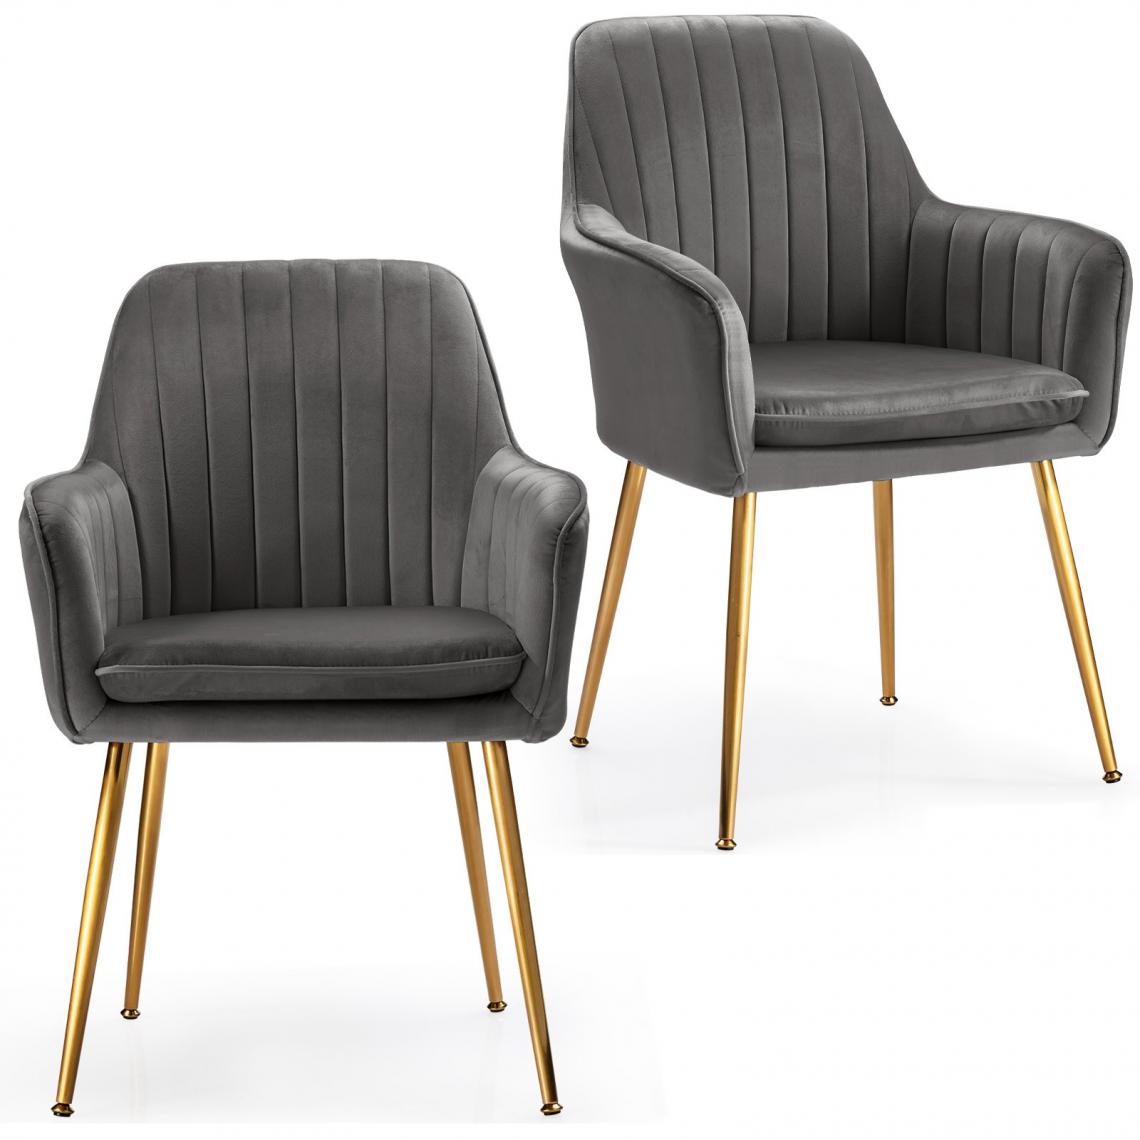 Decoshop26 - Lot de 2 chaises scandinaves en velours gris avec accoudoir et pieds en métal pour salon chambre gris 20_0000740 - Chaises